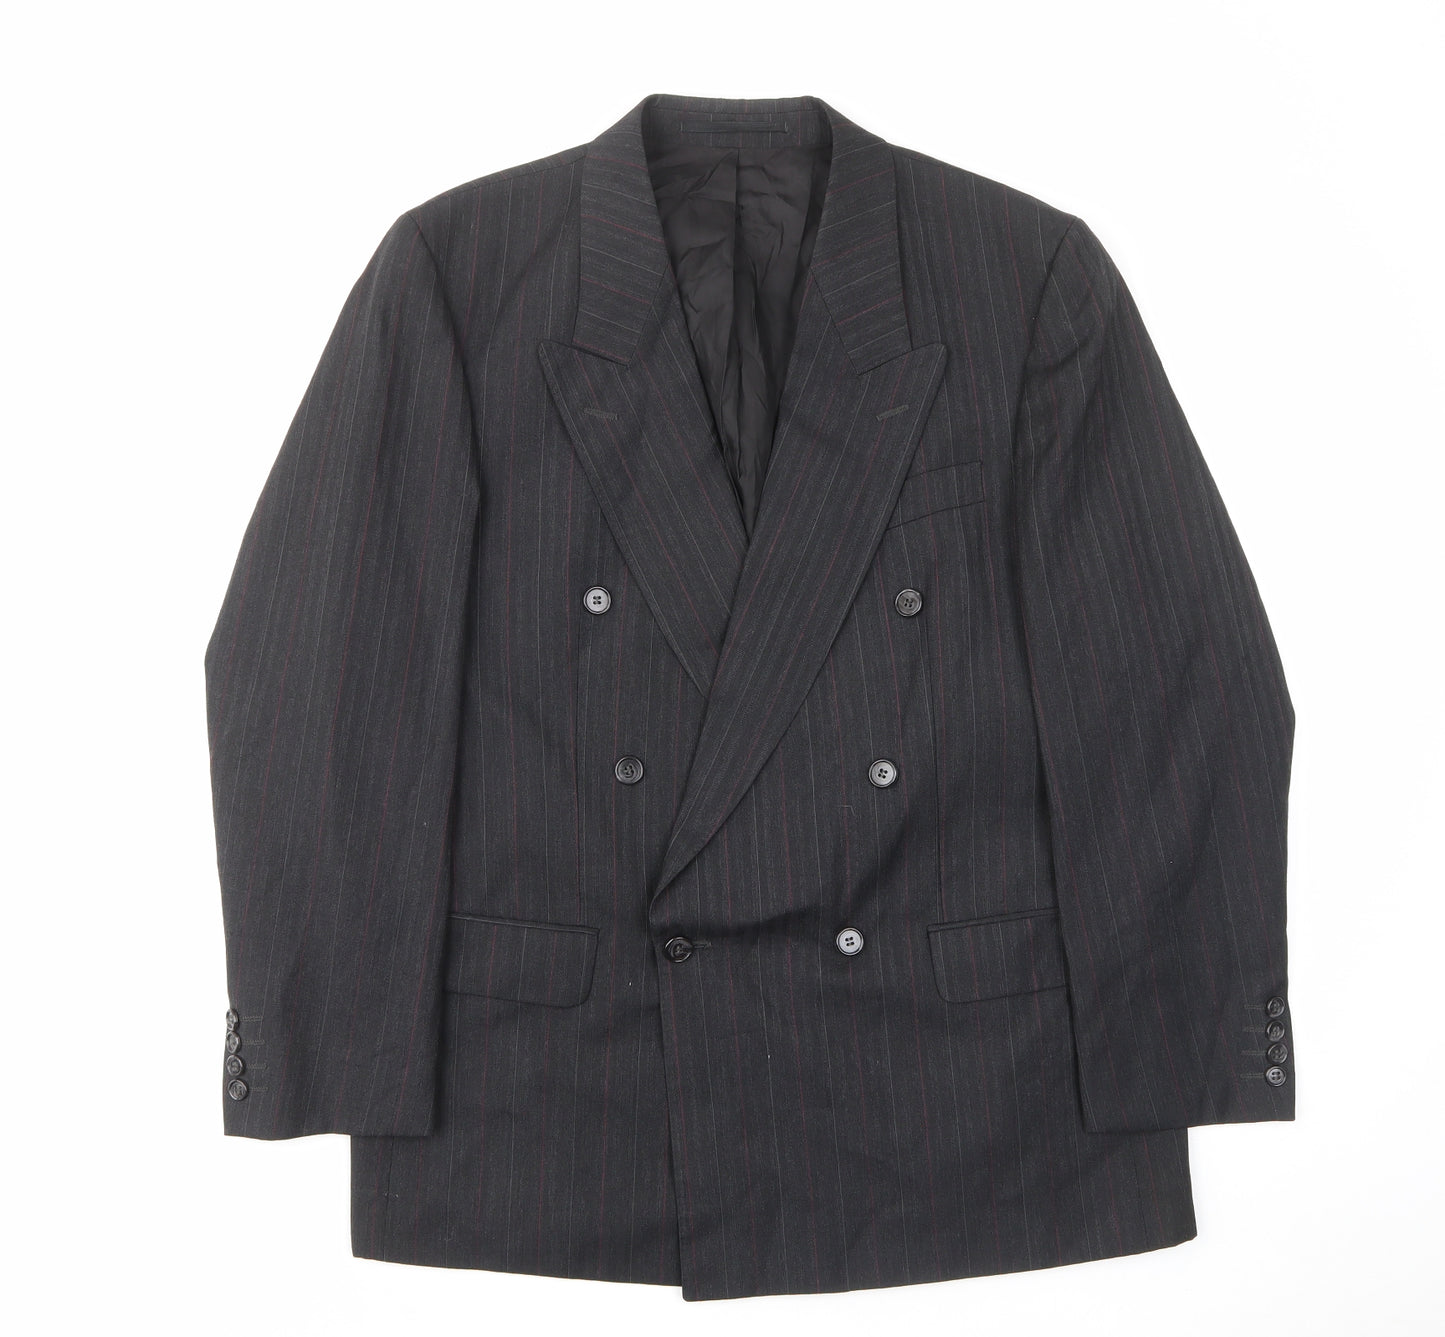 Skads Mens Grey Striped Polyester Jacket Suit Jacket Size 40 Regular